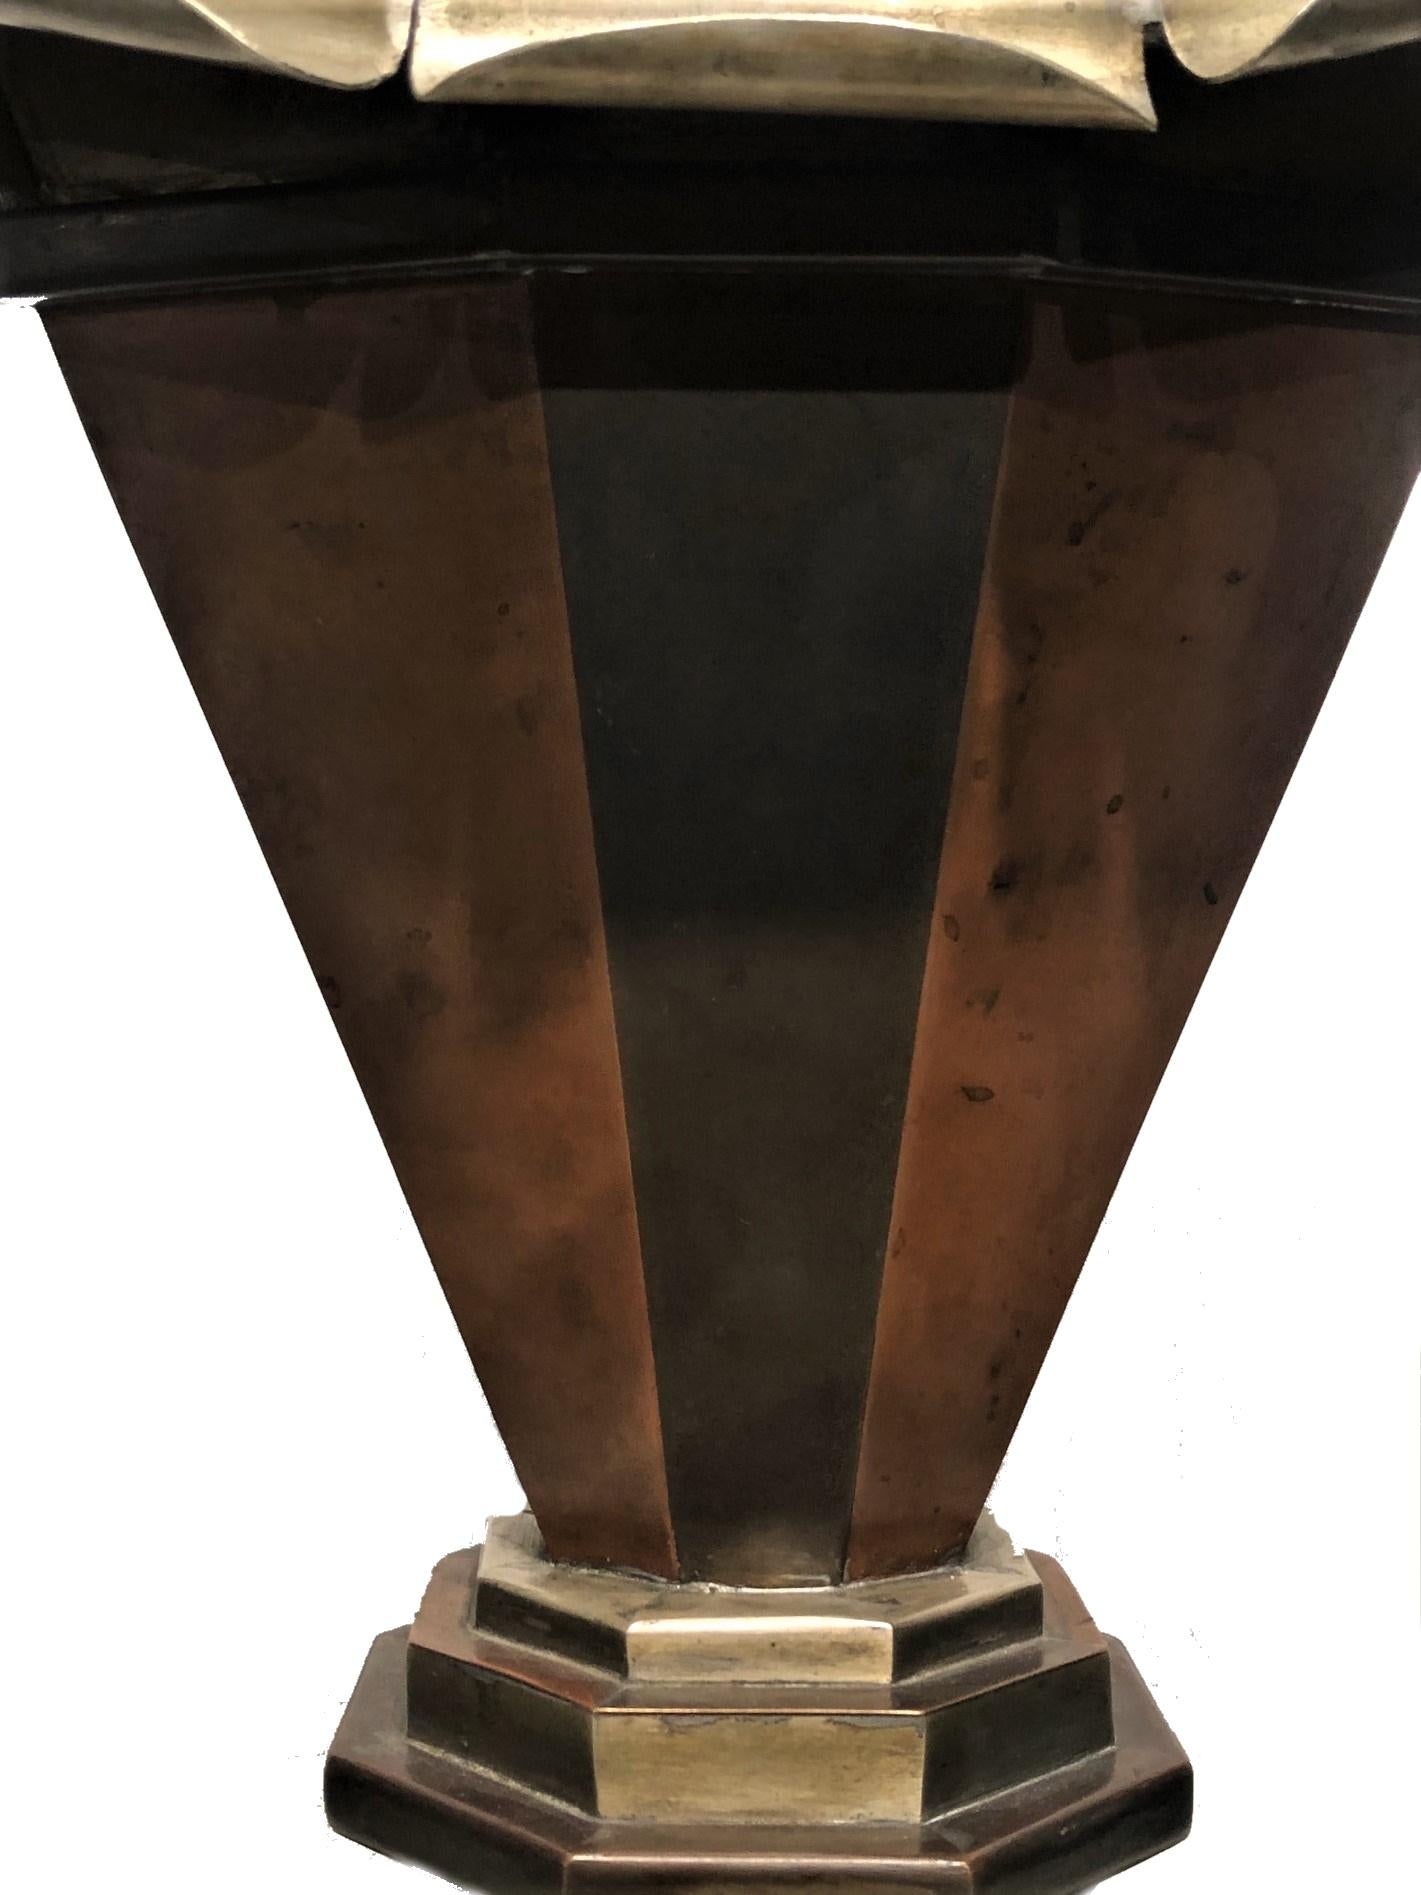 Amerikanisches Art déco 
Pflanzgefäß mit geometrischem Design
Eloxiertes und lackiertes Metall
ca. 1920s

ABMESSUNGEN
Höhe: 13,5 Zoll
Breite: 14,5 Zoll
Tiefe: 8,25 Zoll
